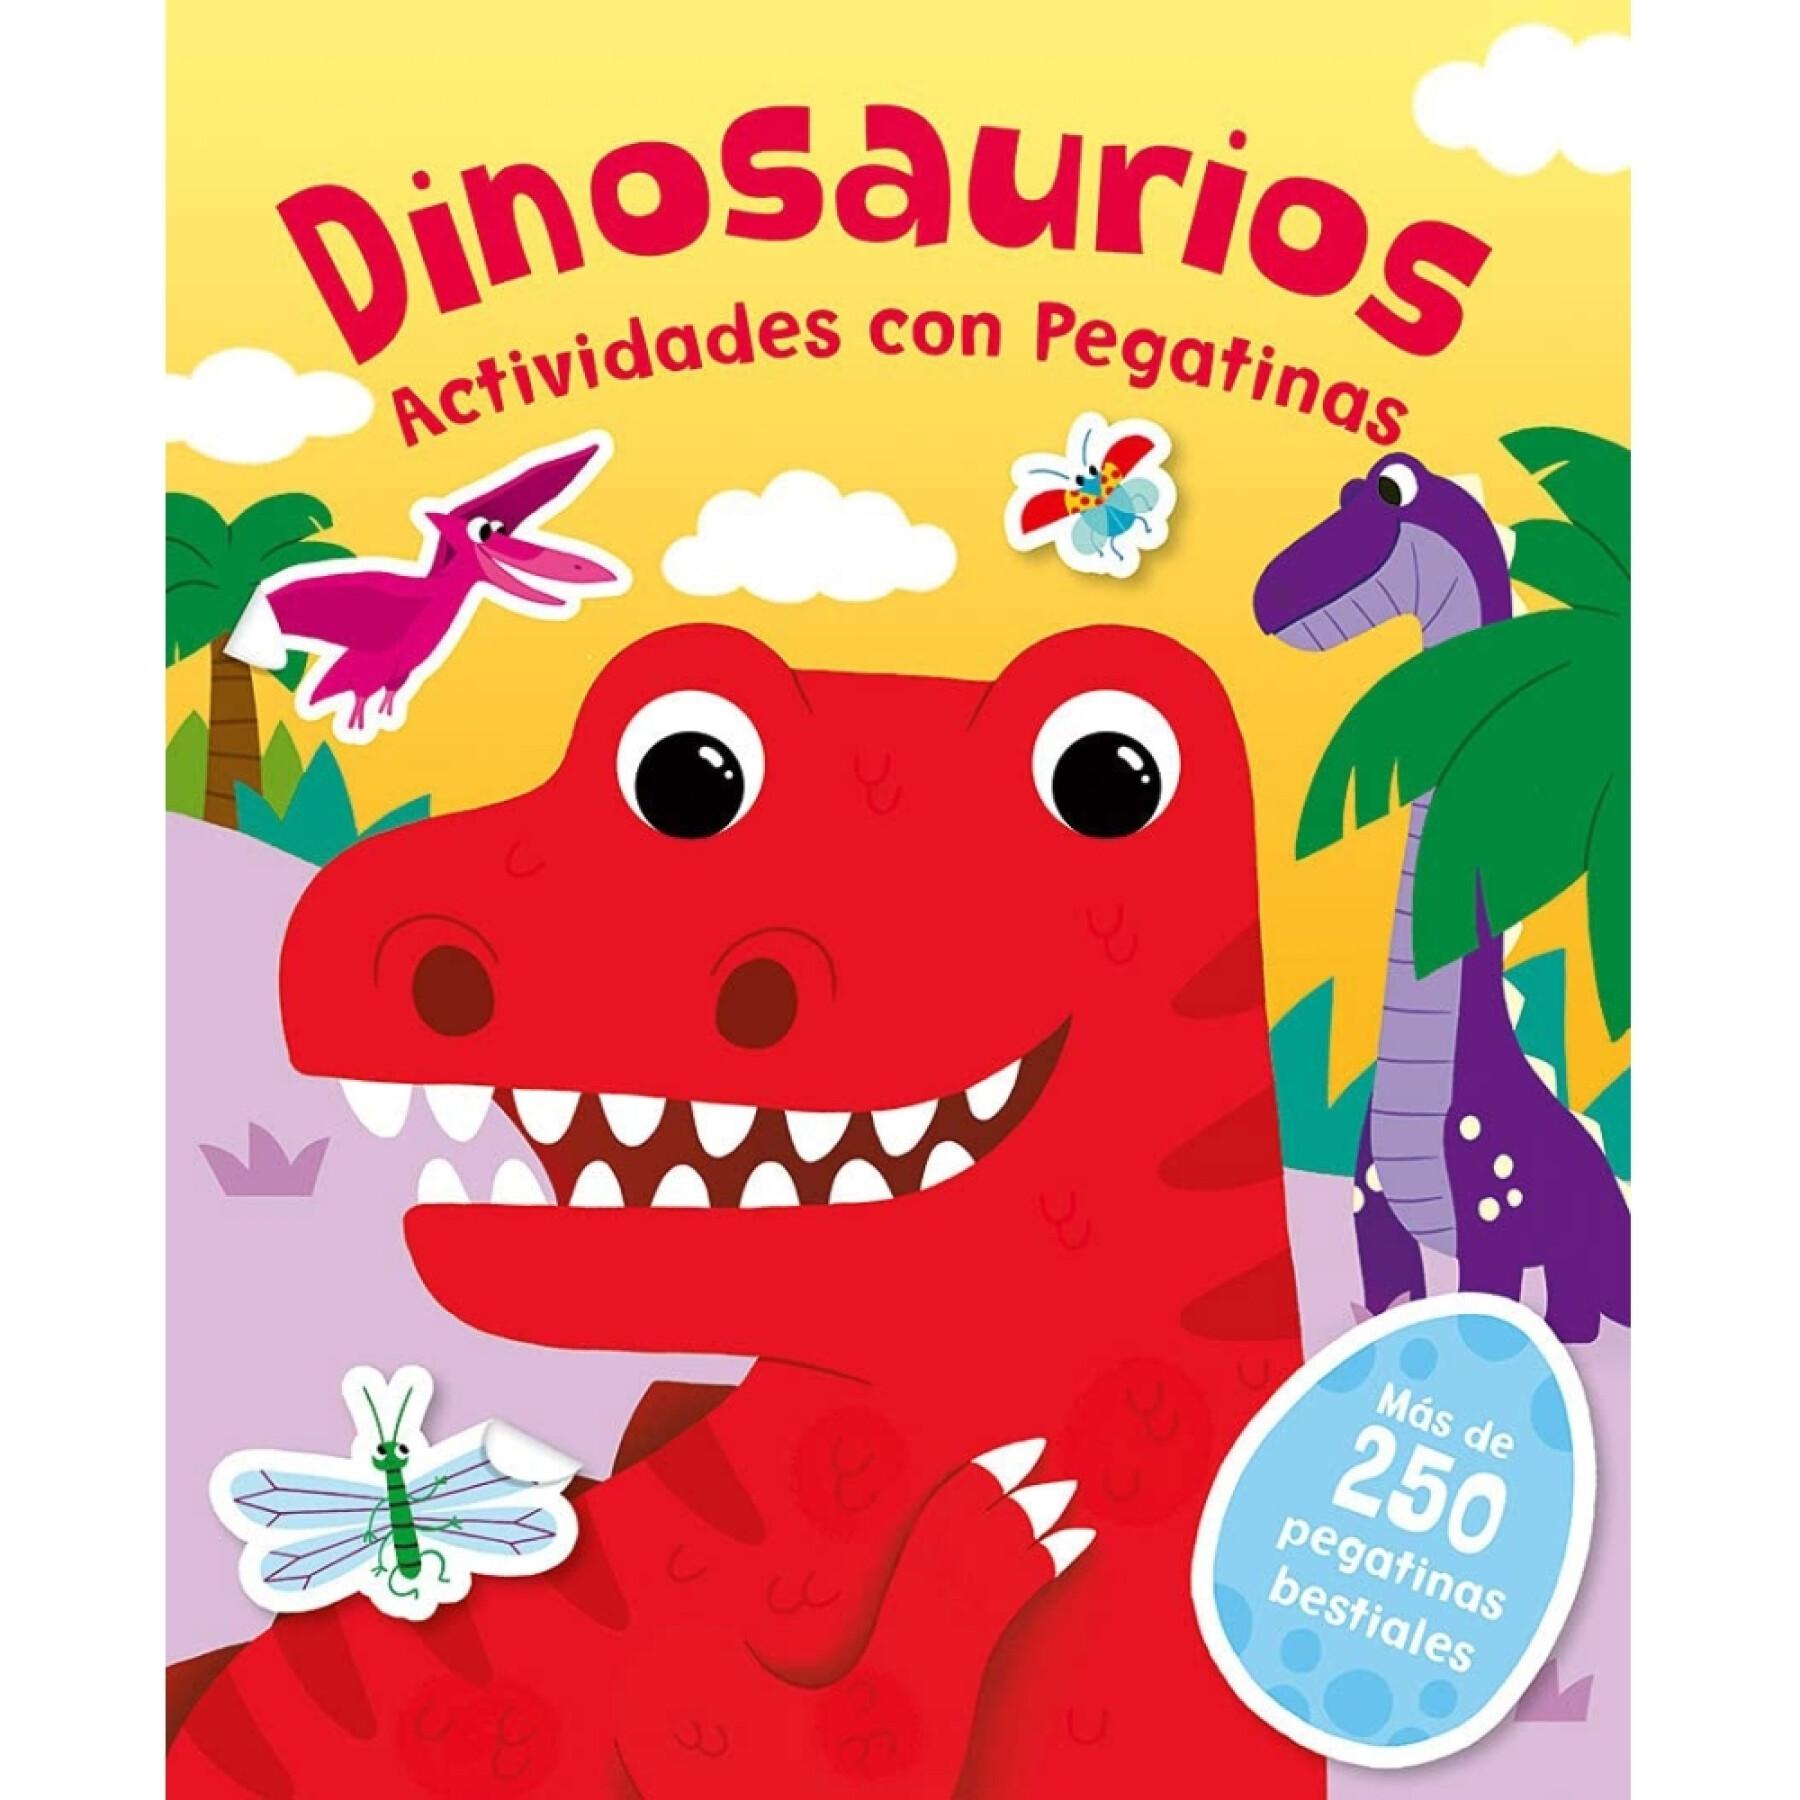 Klistermärkesbok om dinosaurier Edibook